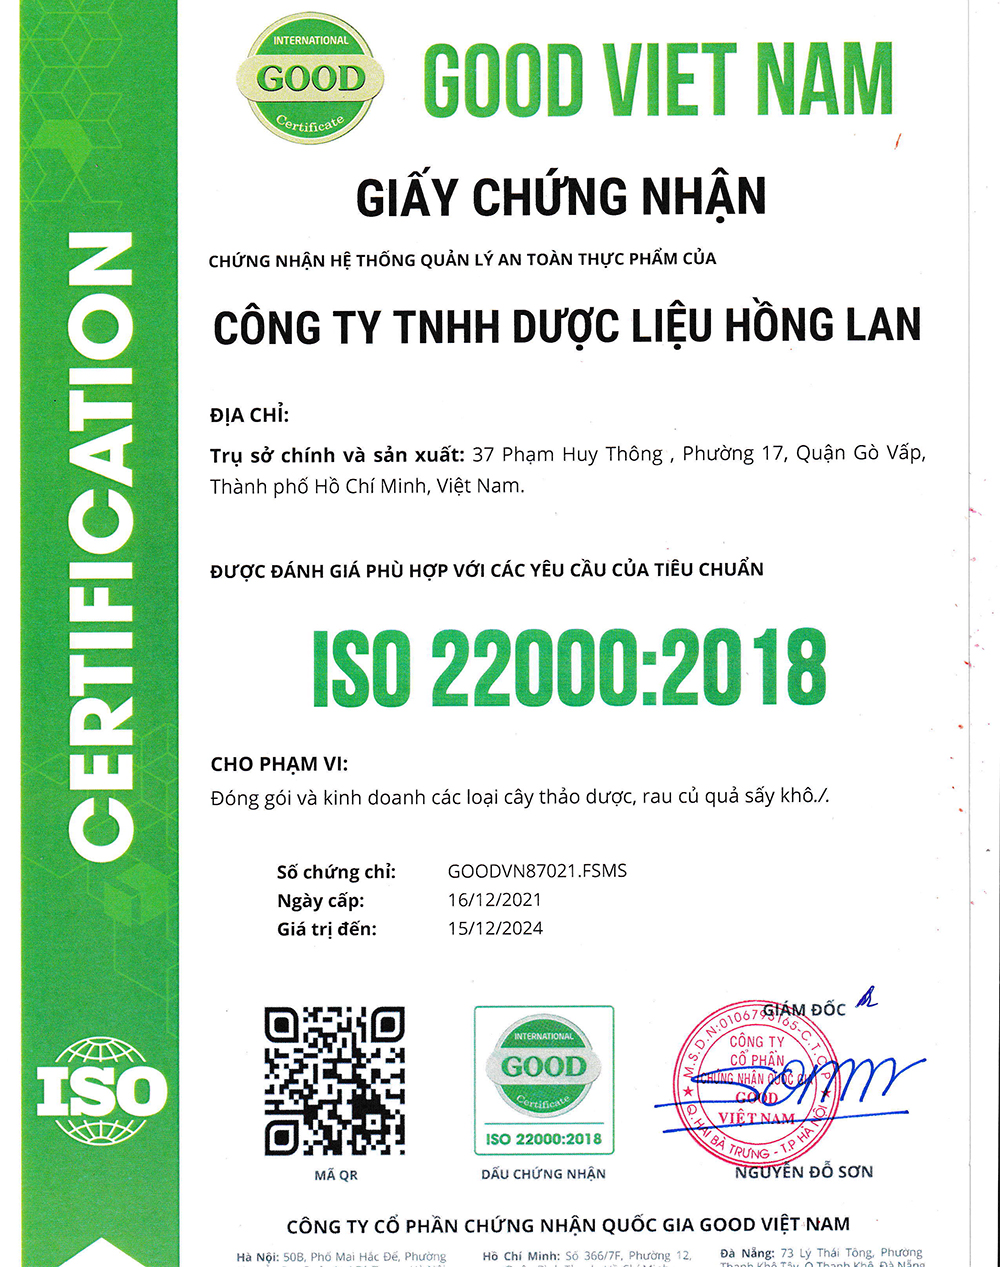 Trà túi lọc Cây Lạc Tiên được sản xuất bởi Công ty TNHH Dược Liệu Hồng Lan theo hệ thống quản lý an toàn thực phẩm ISO 22000:2018 được cấp bởi công ty cổ phần chứng nhận Quốc Gia Good Việt Nam (Good Viet Nam Certification Joint Stock Company)